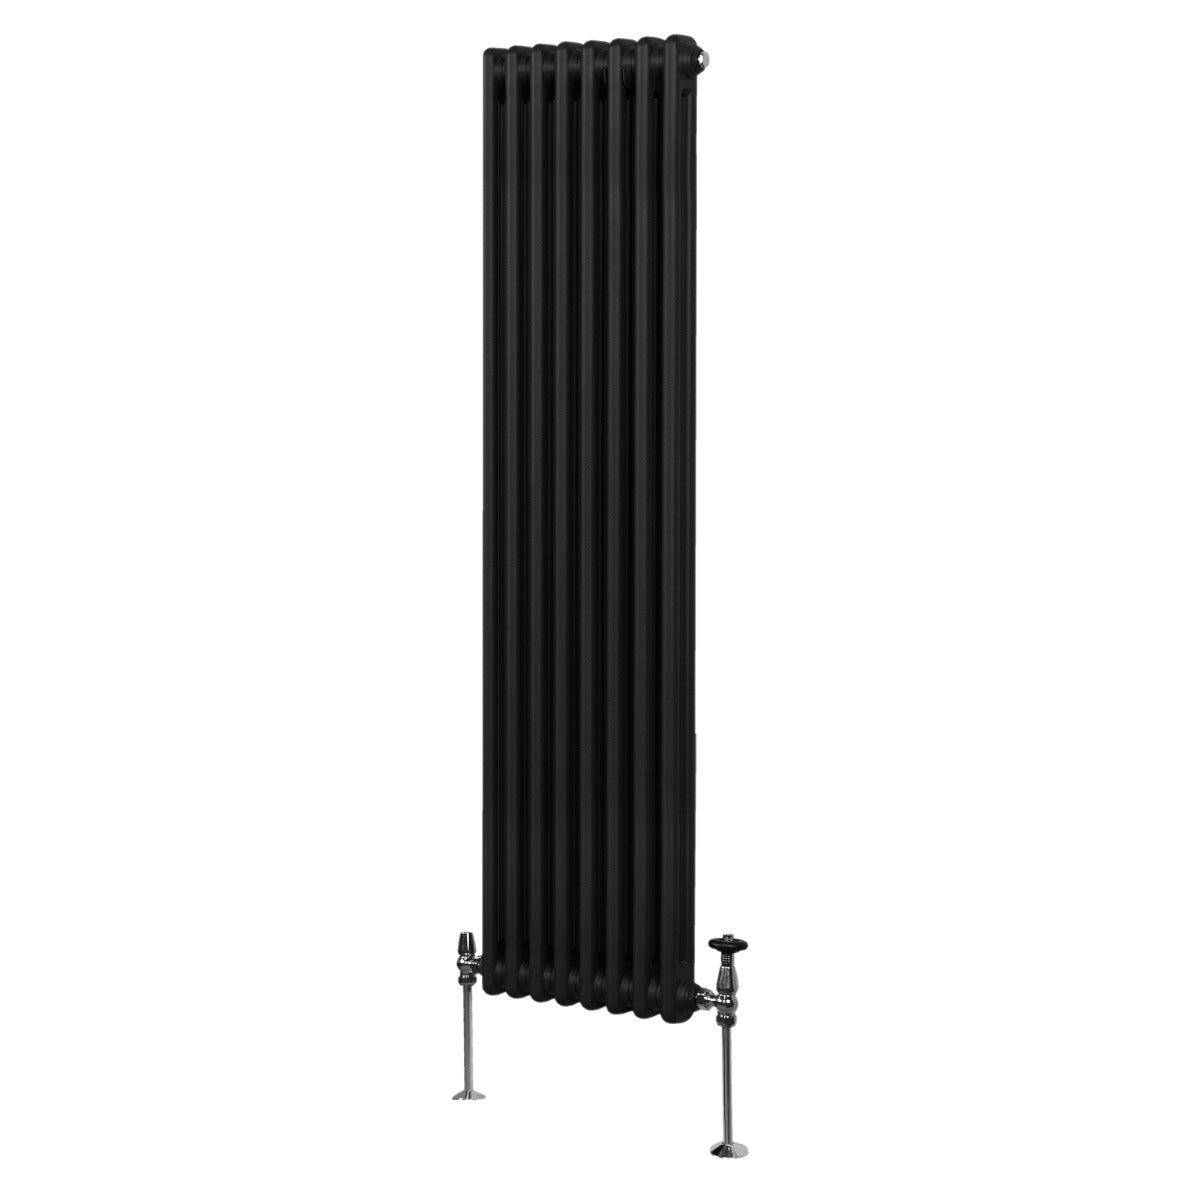 Termosifone Radiatore a 2 colonne per riscaldamento centralizzato verticale Nero 180x38cm